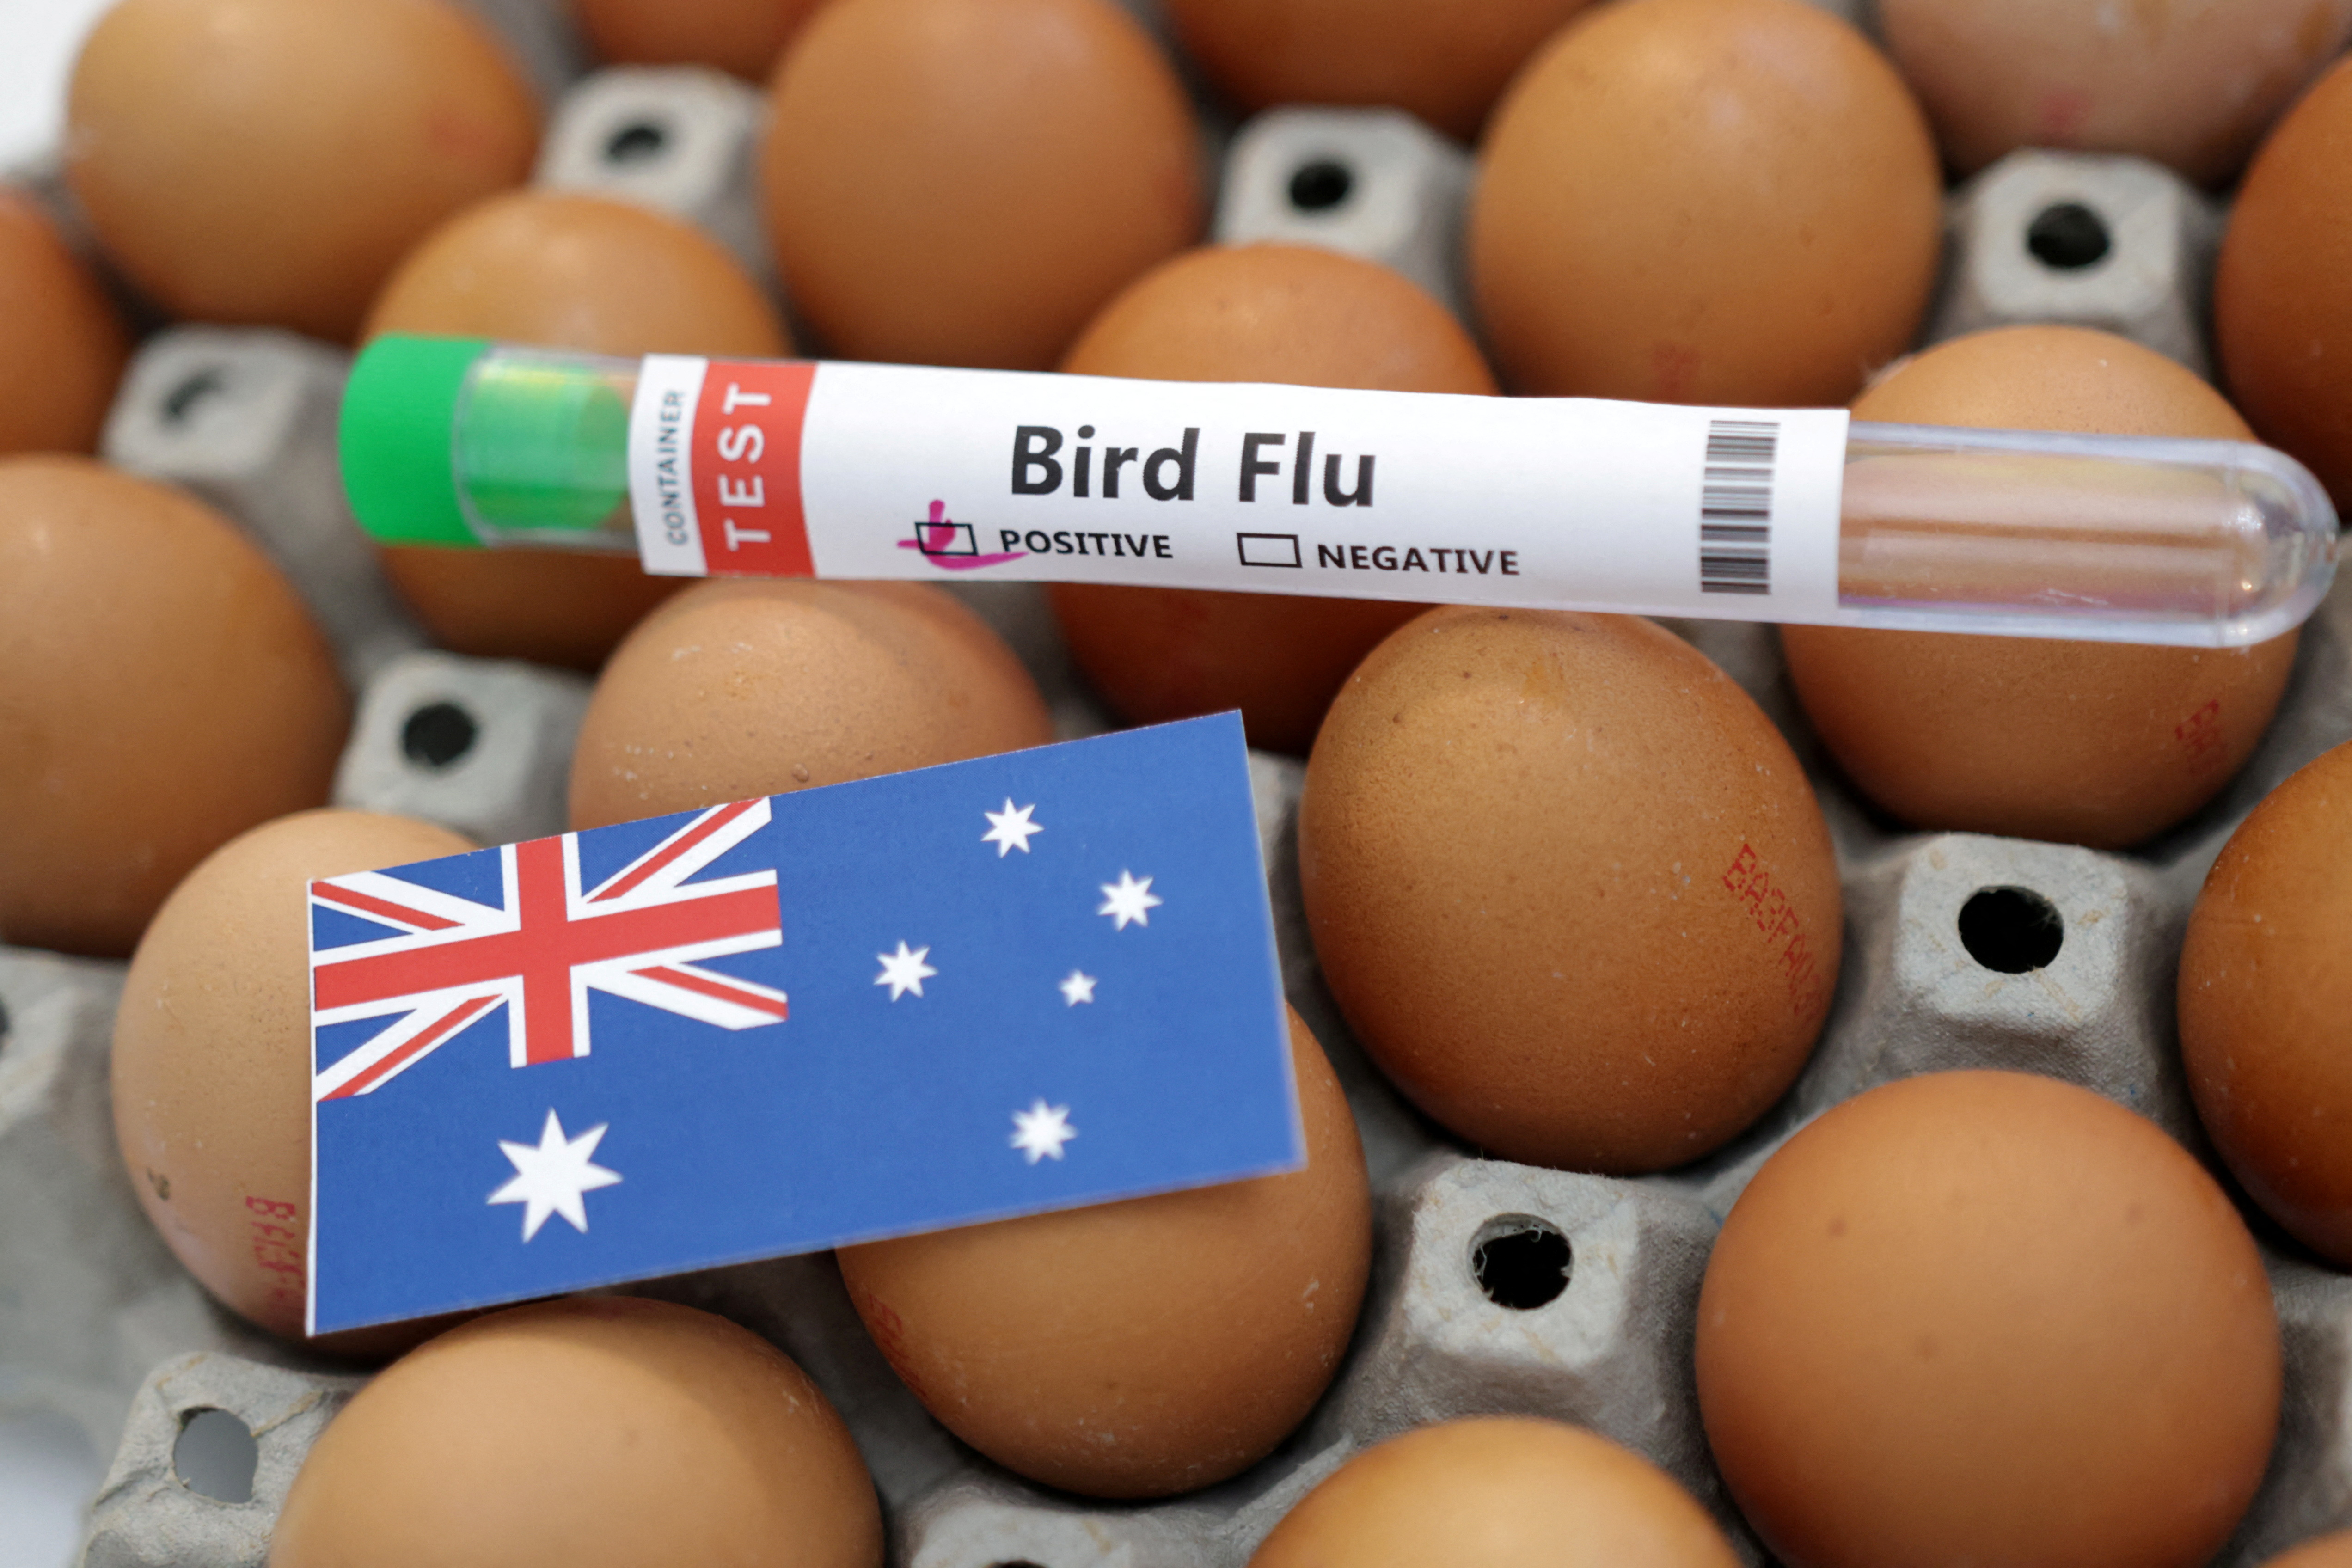 Illustration shows test tube labelled "Bird Flu", eggs and Australia flag